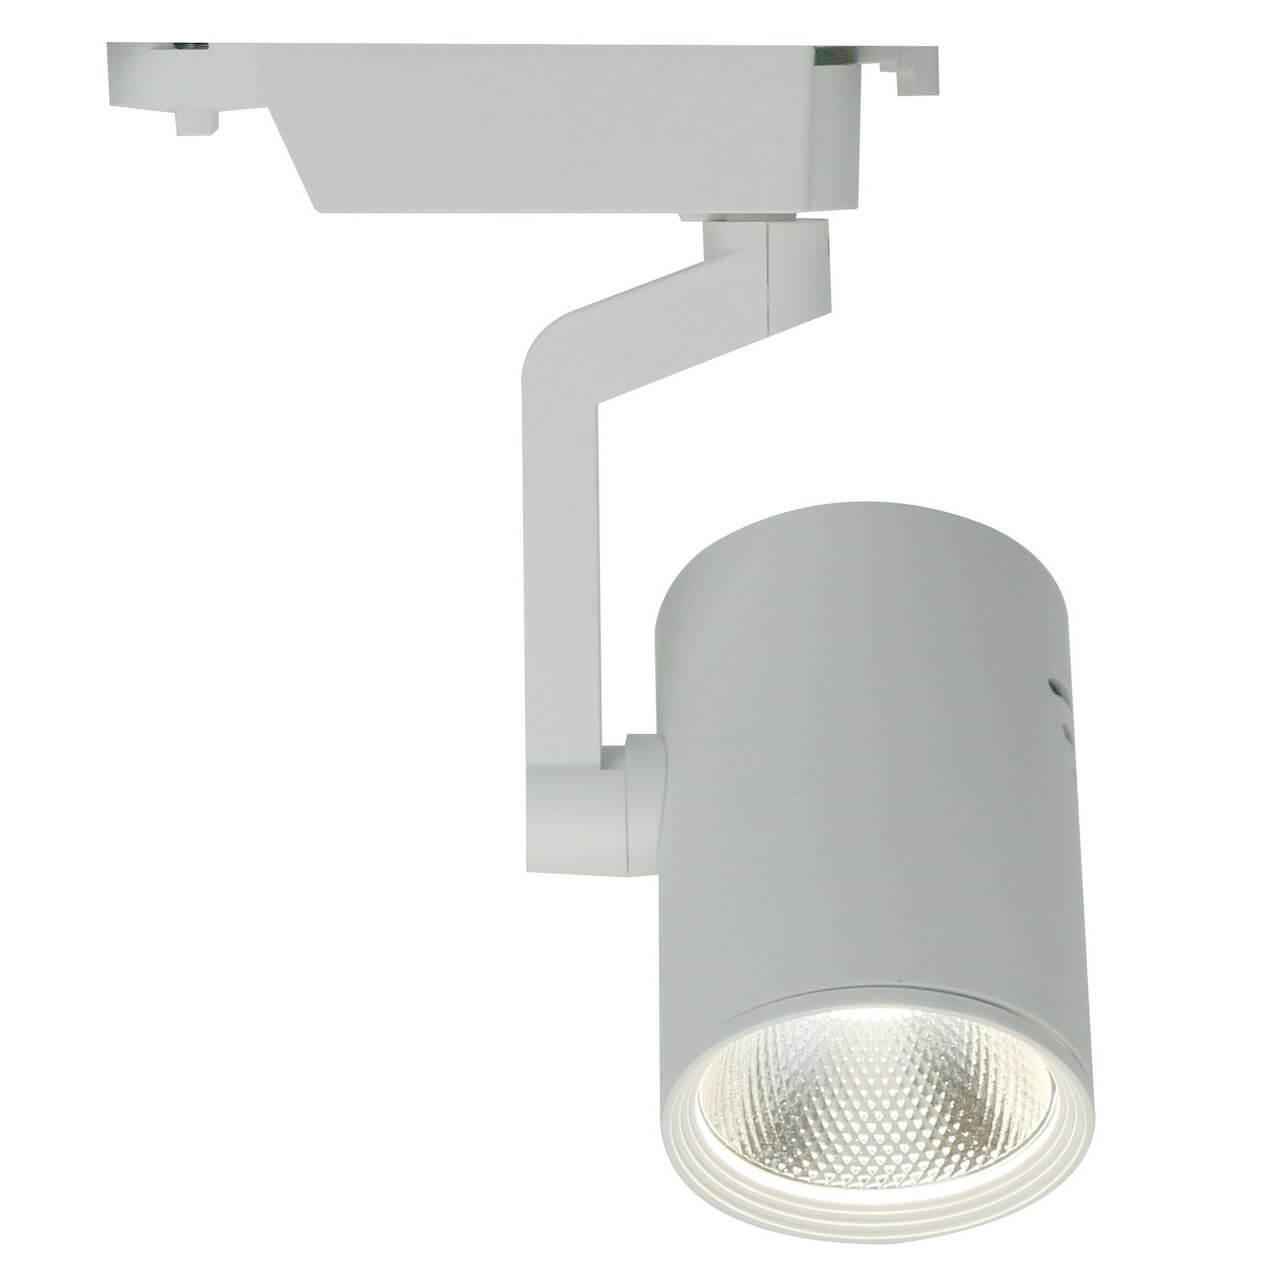 Трековый светильник Arte Lamp TRACCIA A2330PL-1WH чайник philips чайник металлический 1 7 л 2200 вт световой индикатор функция автовыключения индикатор уровня воды